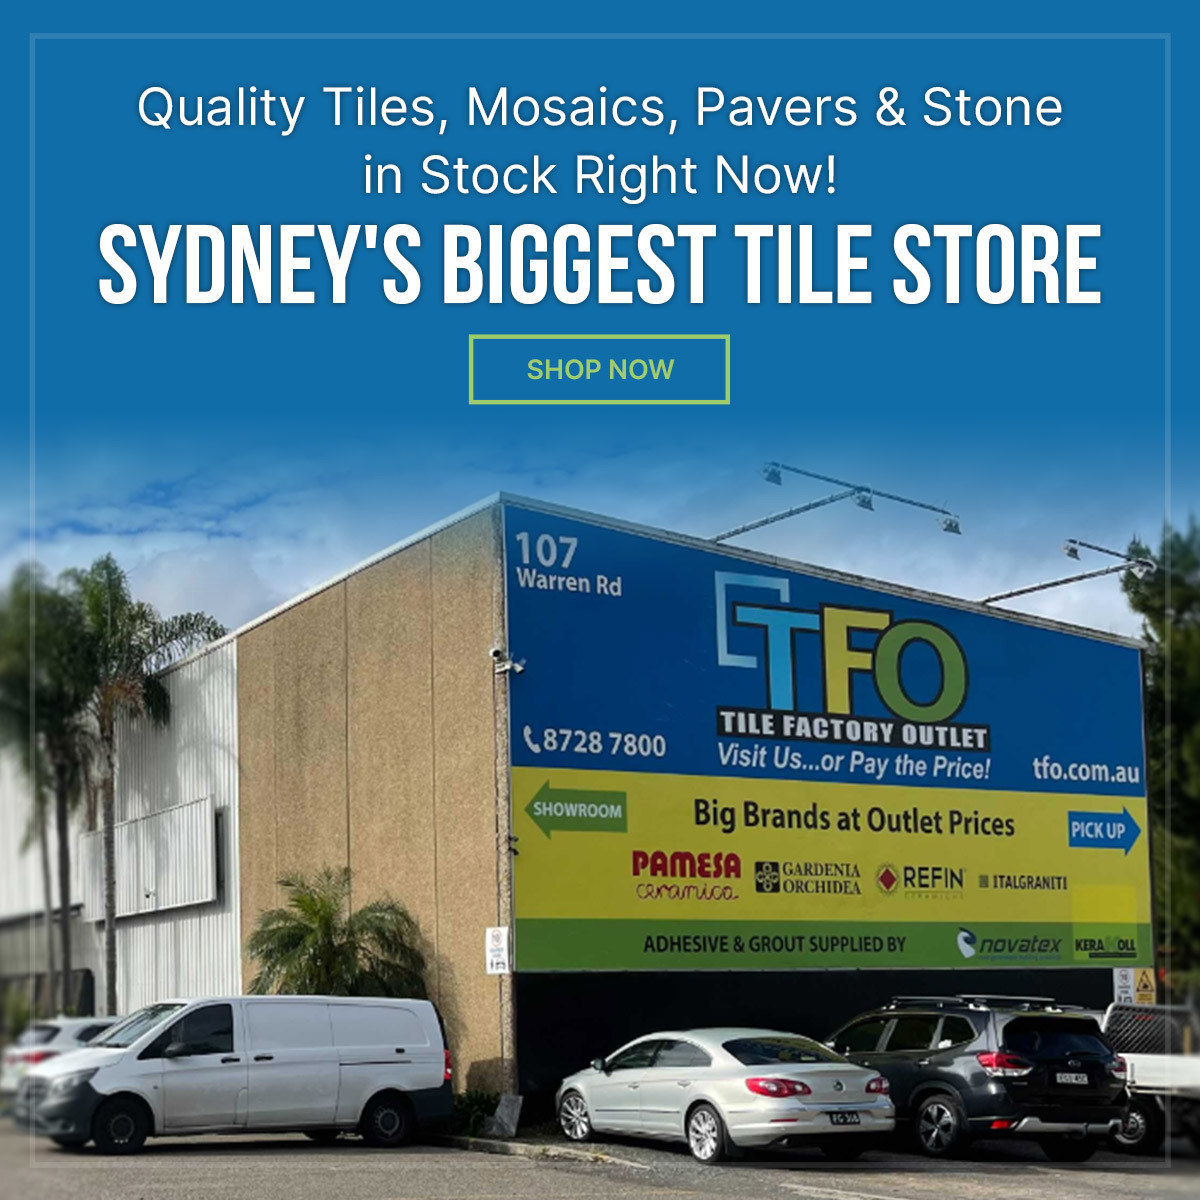 Tile Clearance Warehouse Sydney – Save On Bathroom Tiles